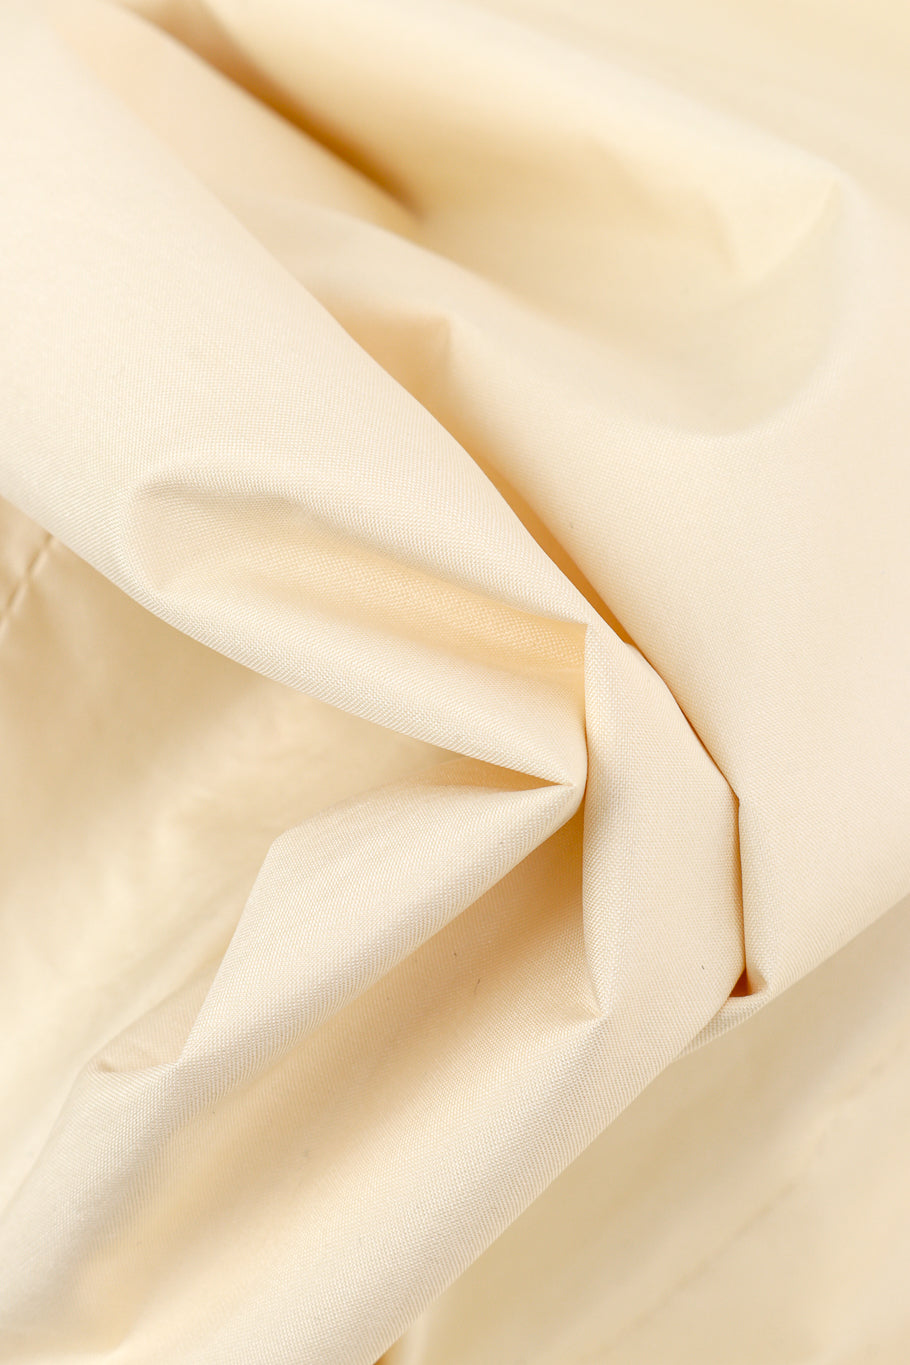 Vintage Hermés Silk Trench Coat fabric closeup @recess la